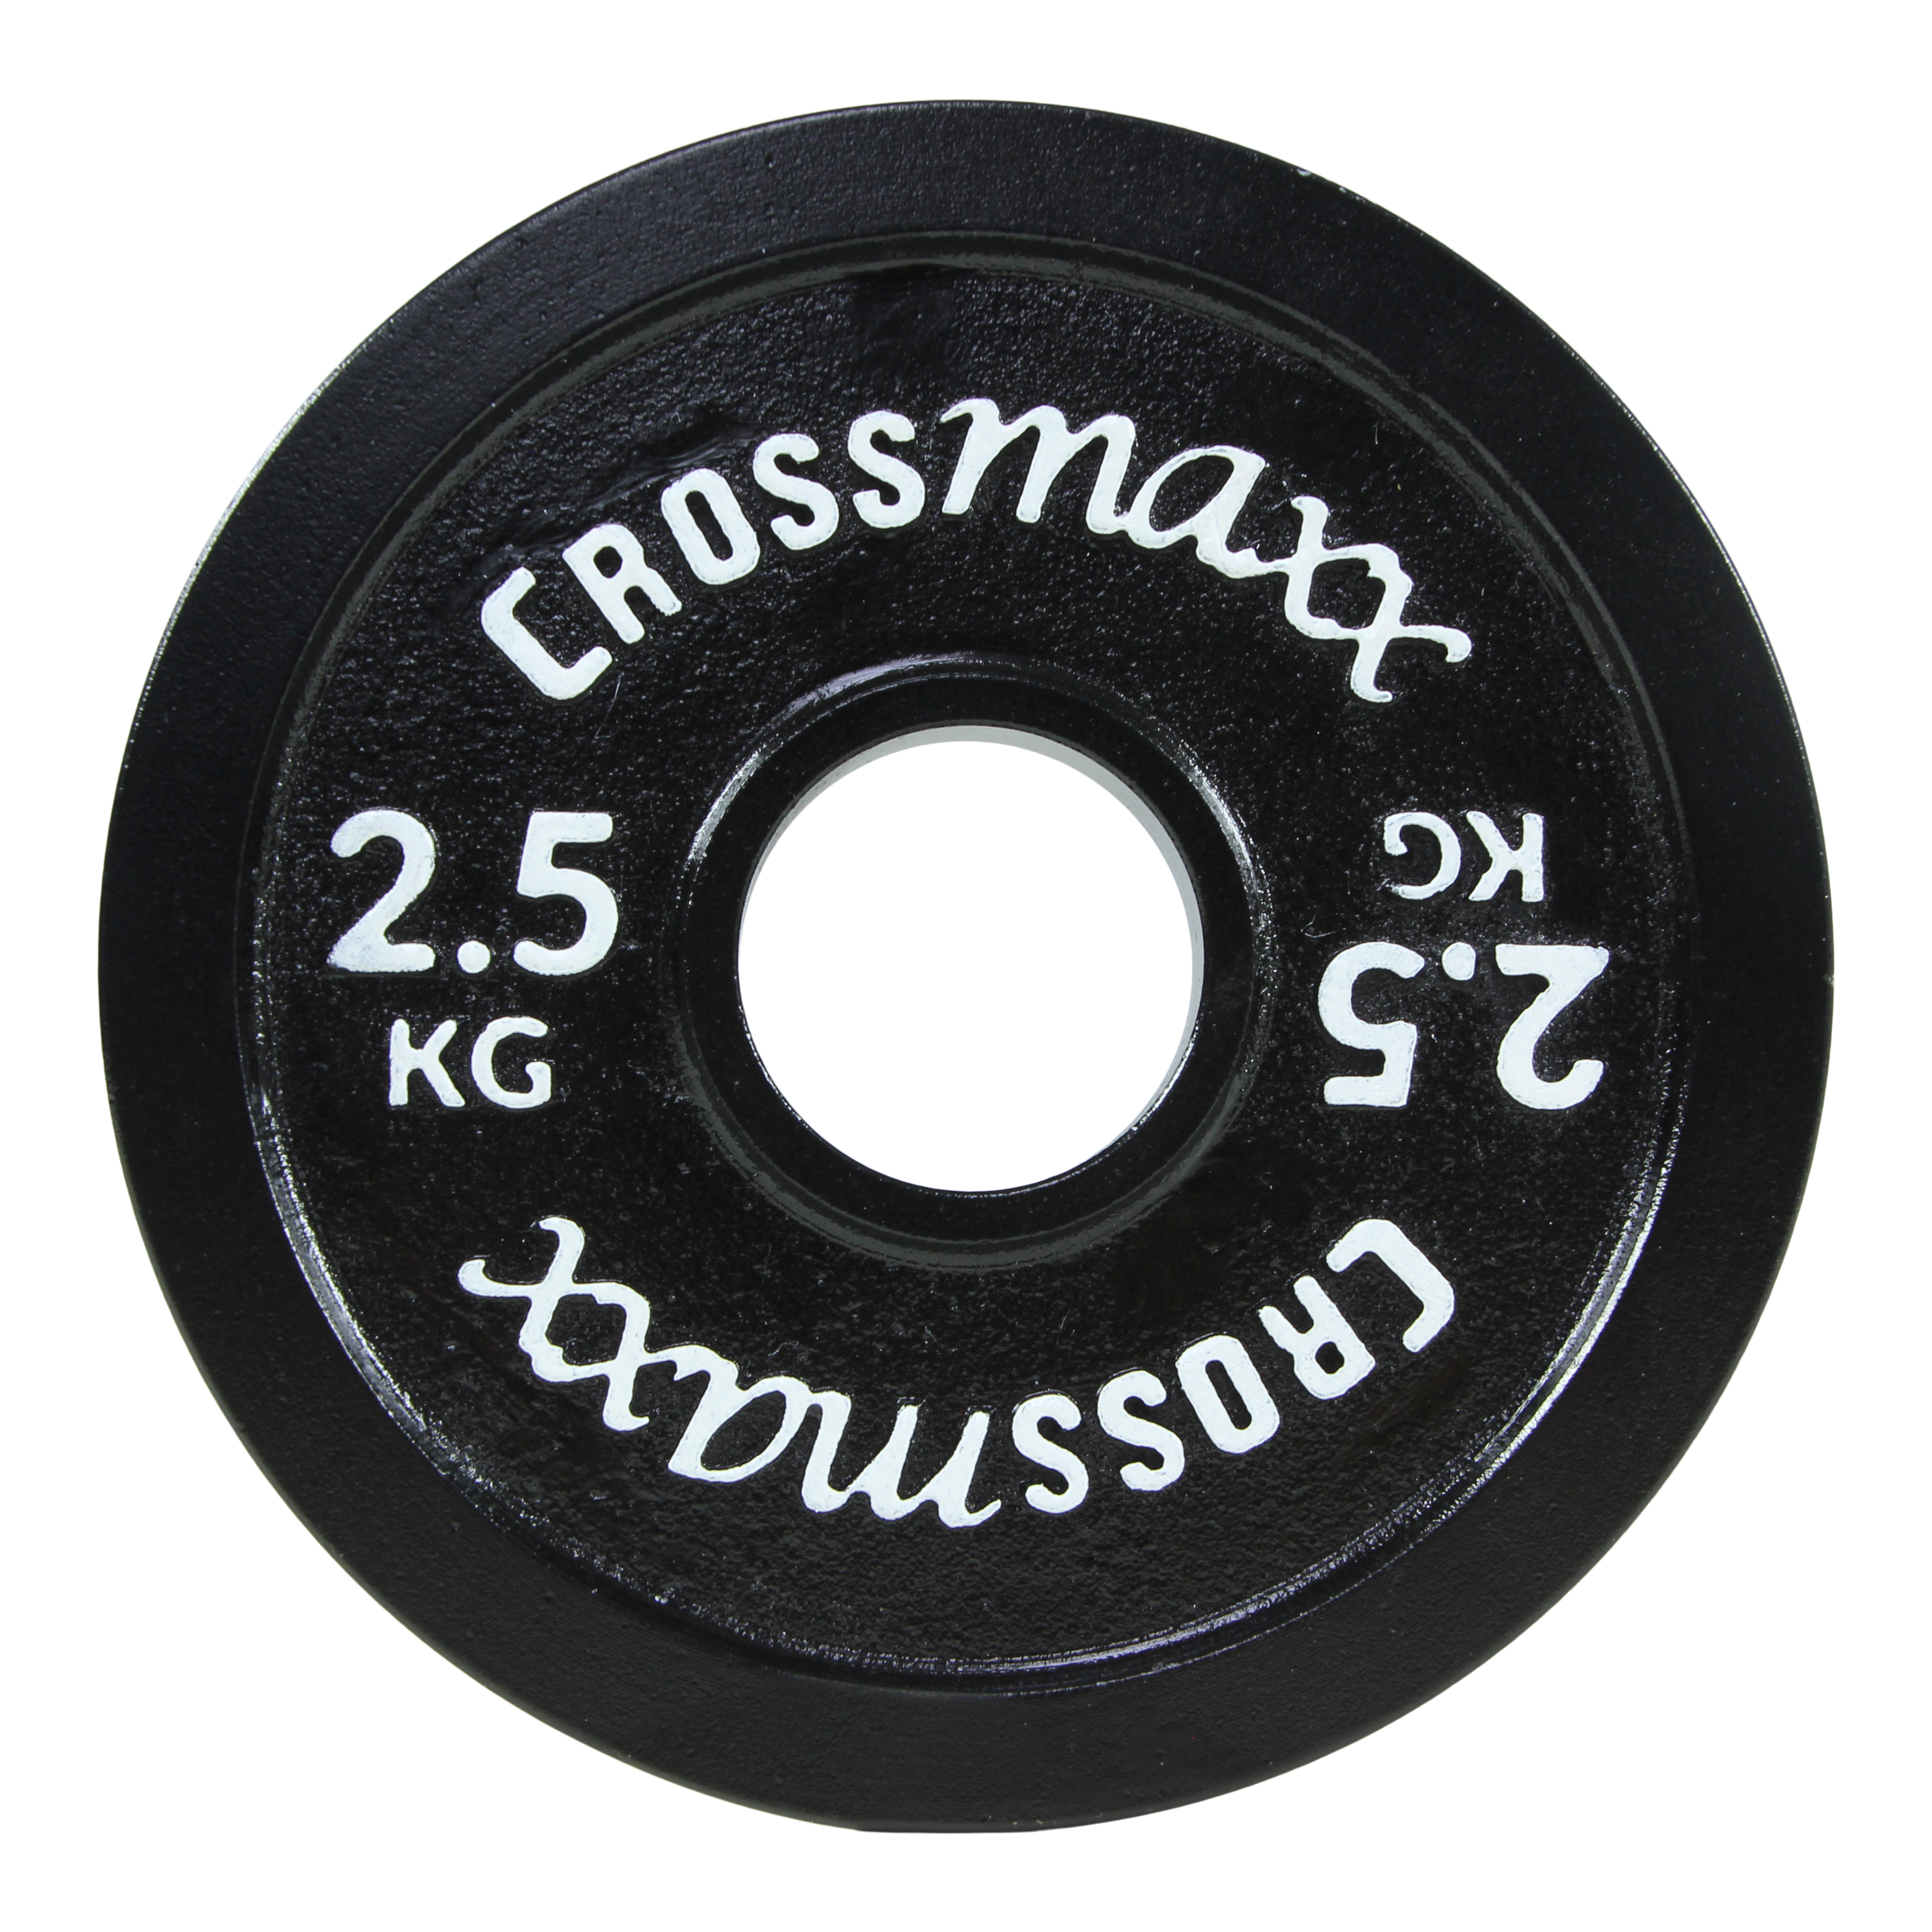 Crossmaxx kalibreret vægtskive 2,5 kg i støbejern til styrkeløft - sort thumbnail